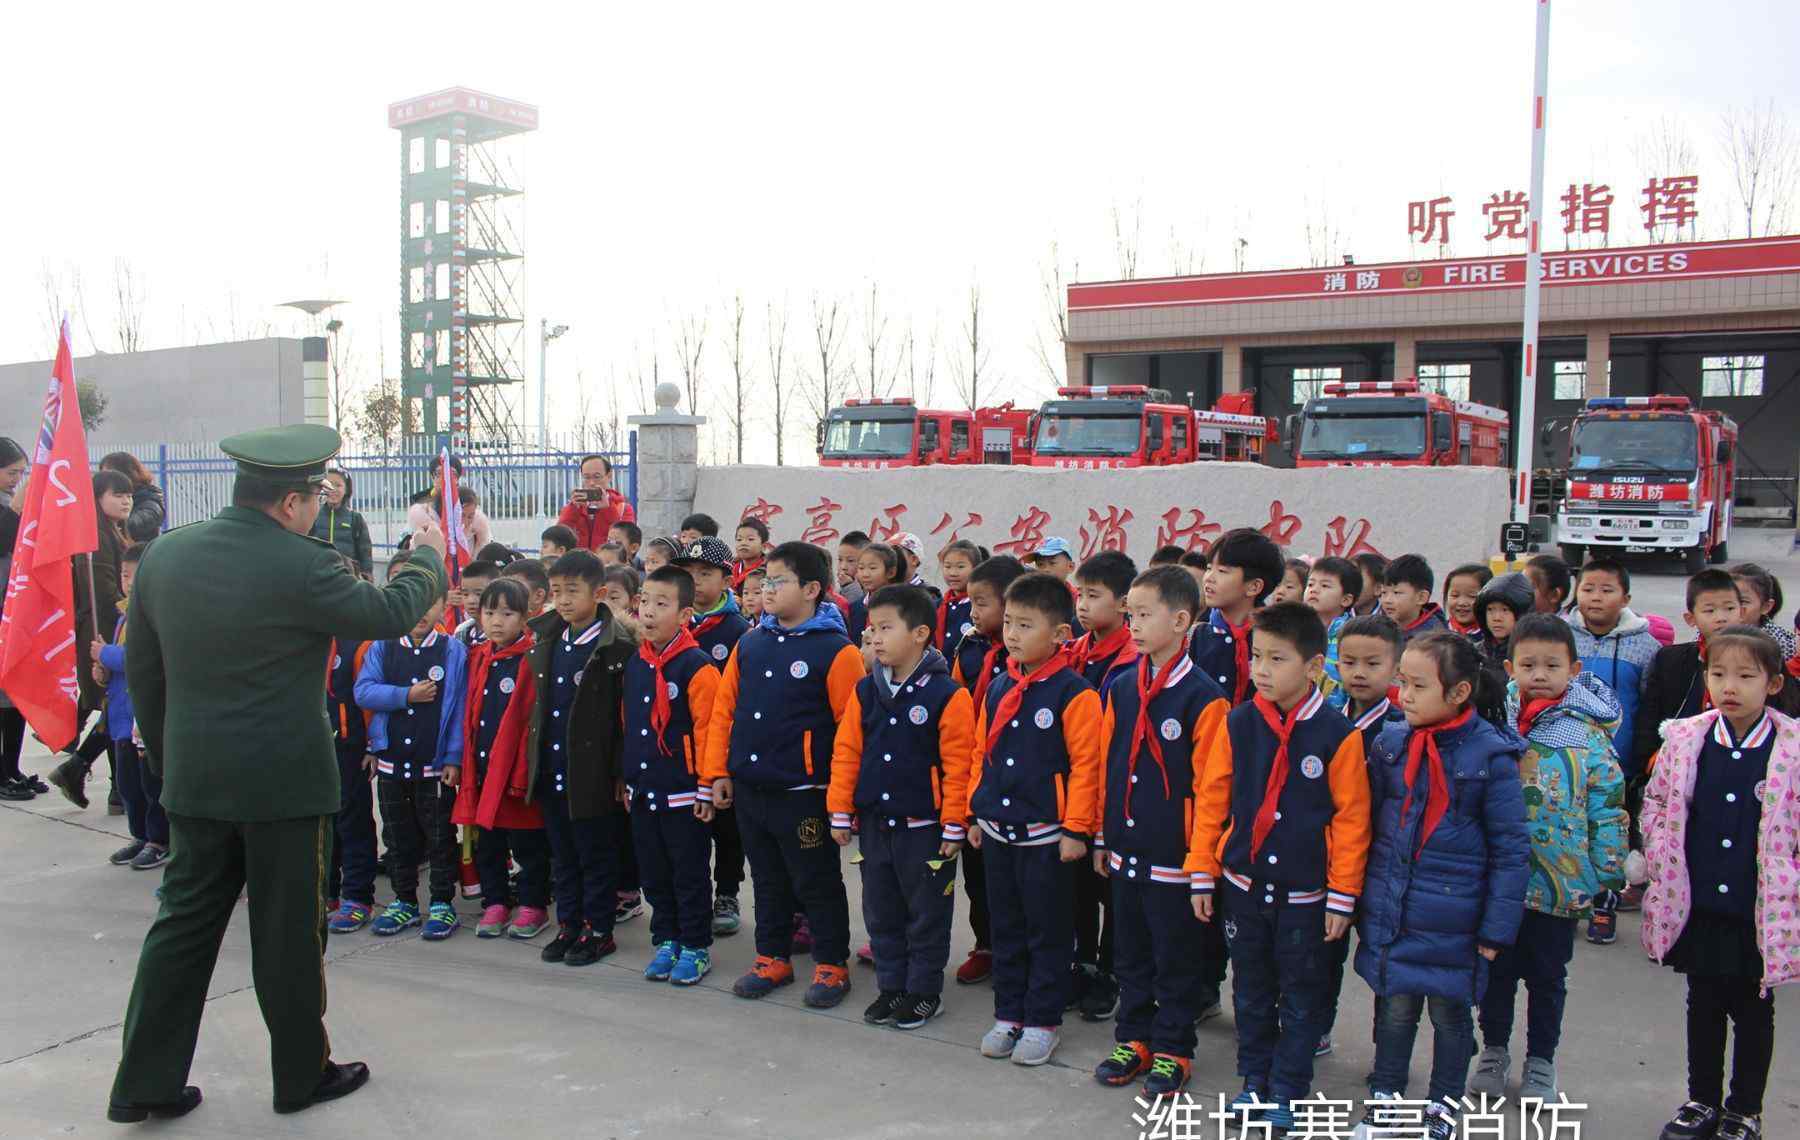 小学生消防知识 东方学校60余名小学生参观消防队“零距离”学习消防知识